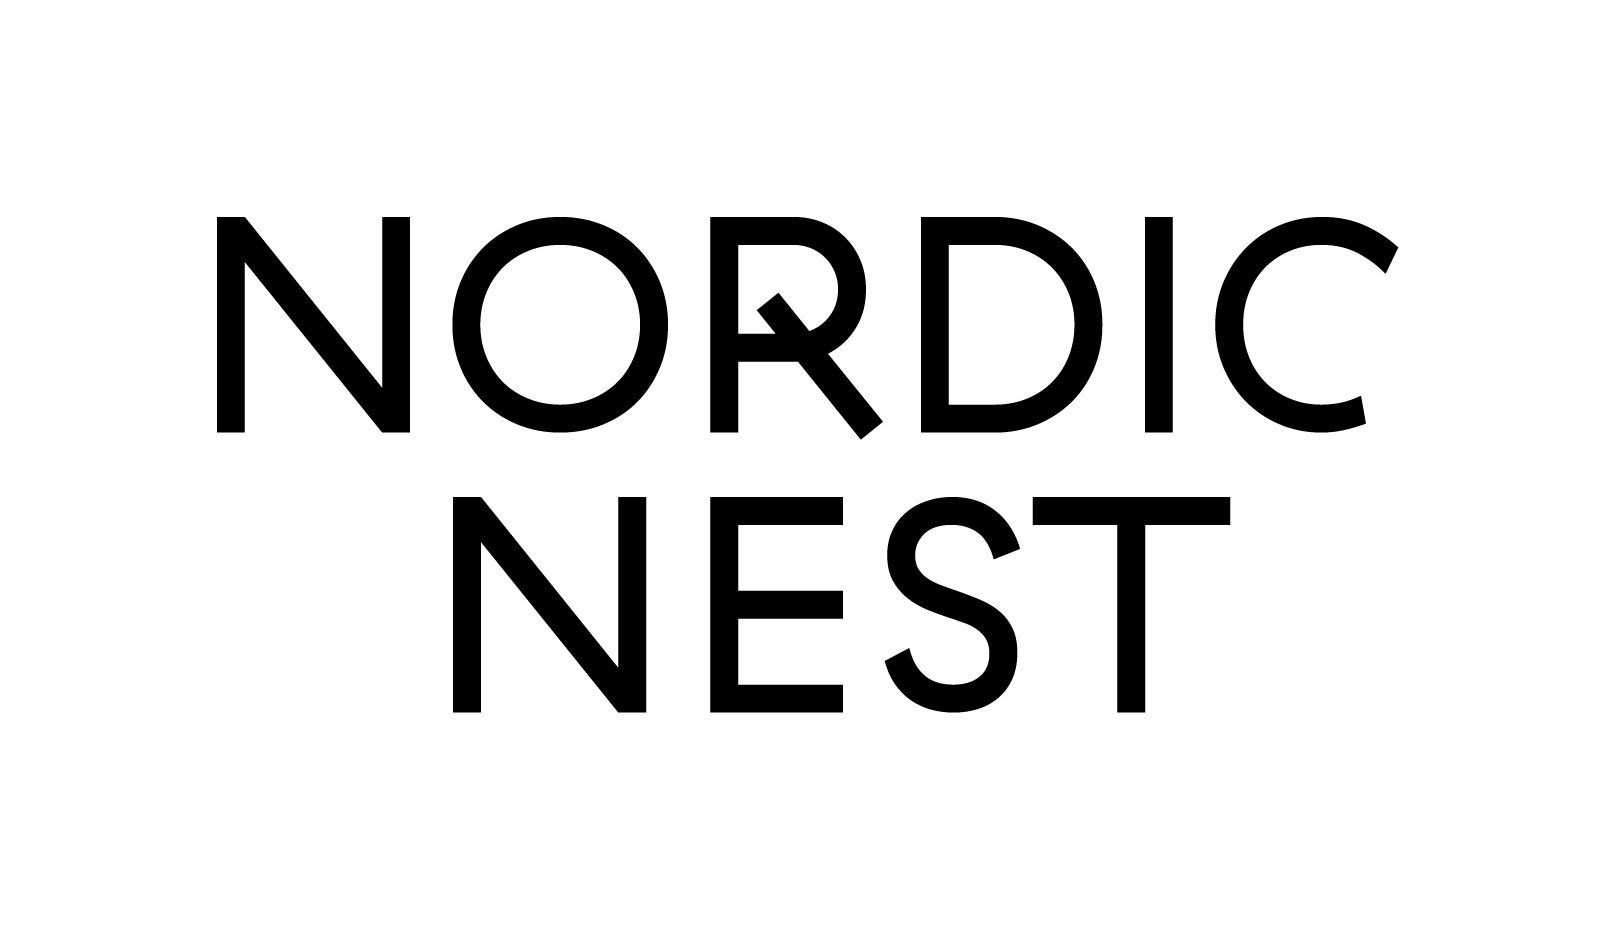 Nordic Nest